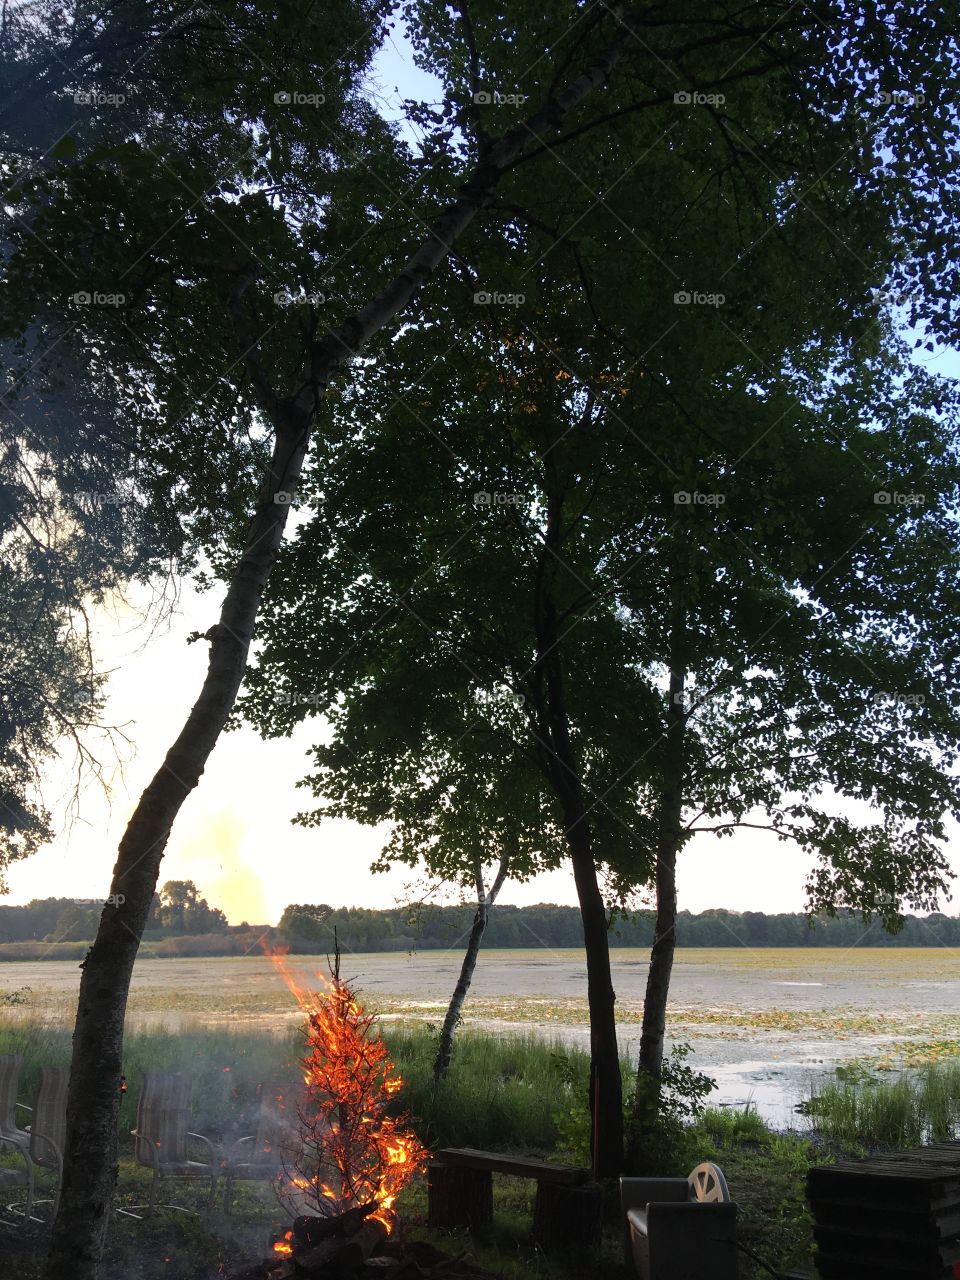 Burning tree at evening 